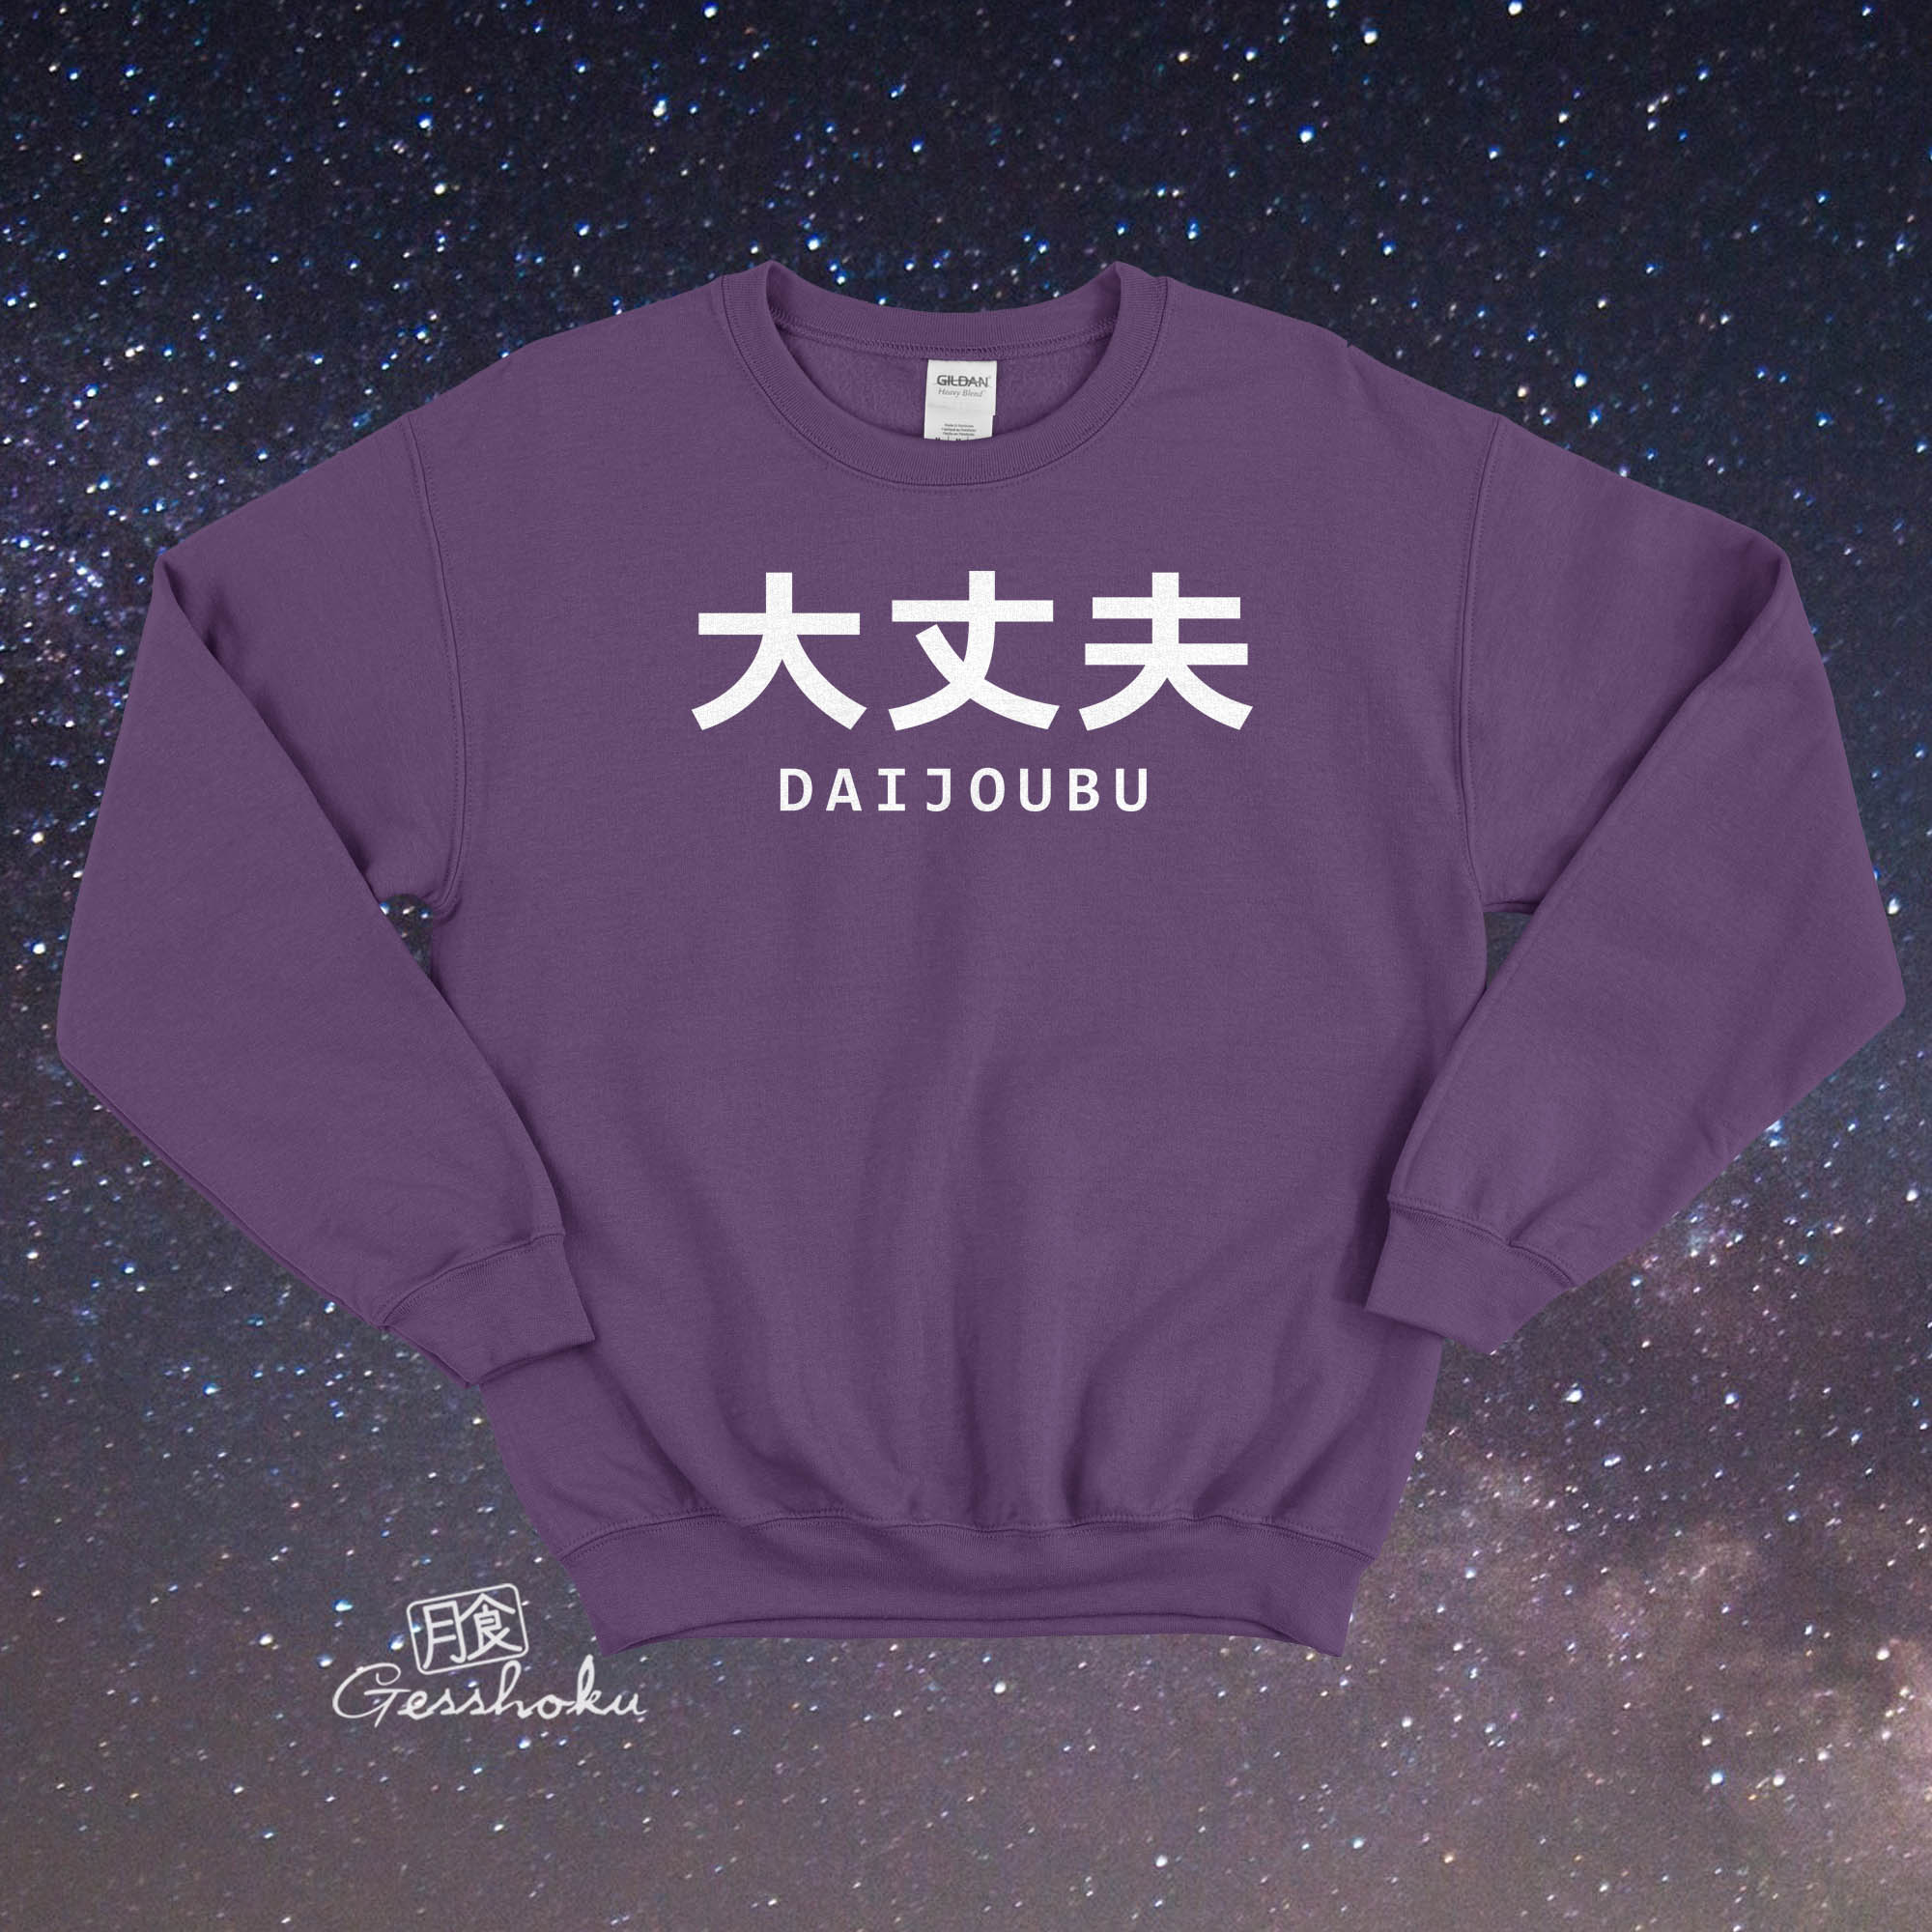 Daijoubu "It's Okay" Crewneck Sweatshirt - Purple